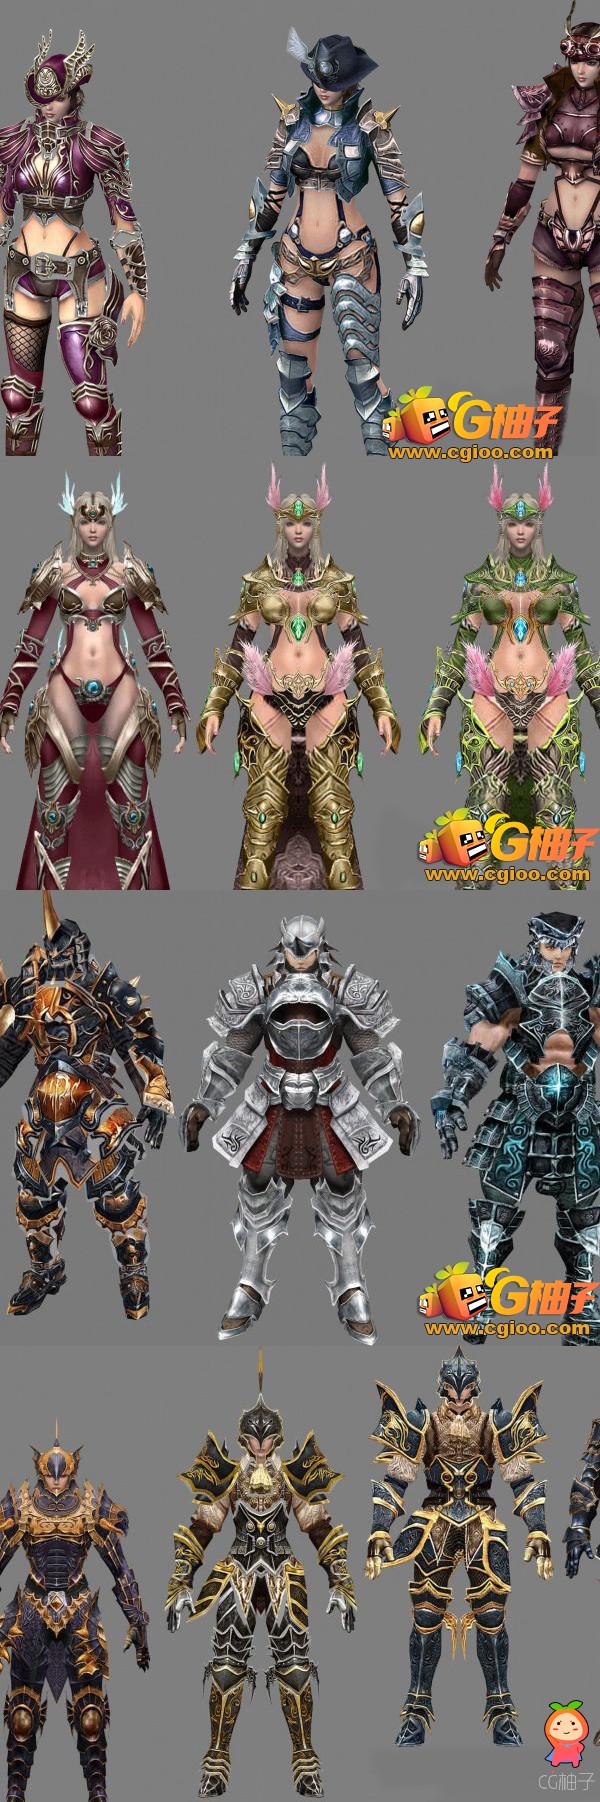 科幻人物3D角色模型,穿铠甲装备男女3D模型下载,3D美术资源